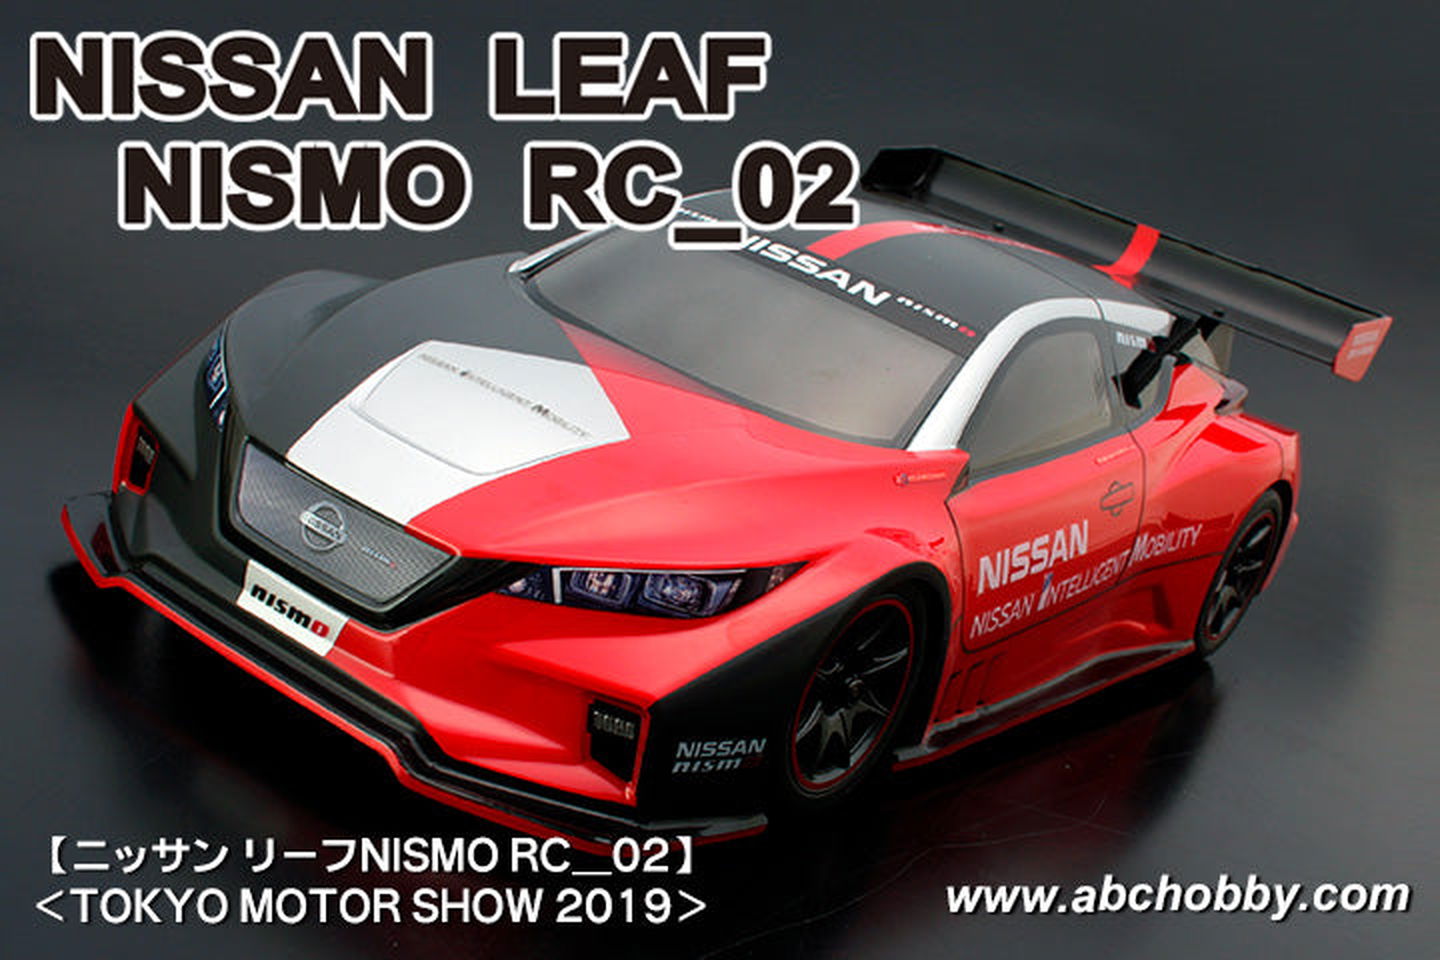 ABC Hobby 66327 Nissan Leaf Nismo RC-02 - BanzaiHobby